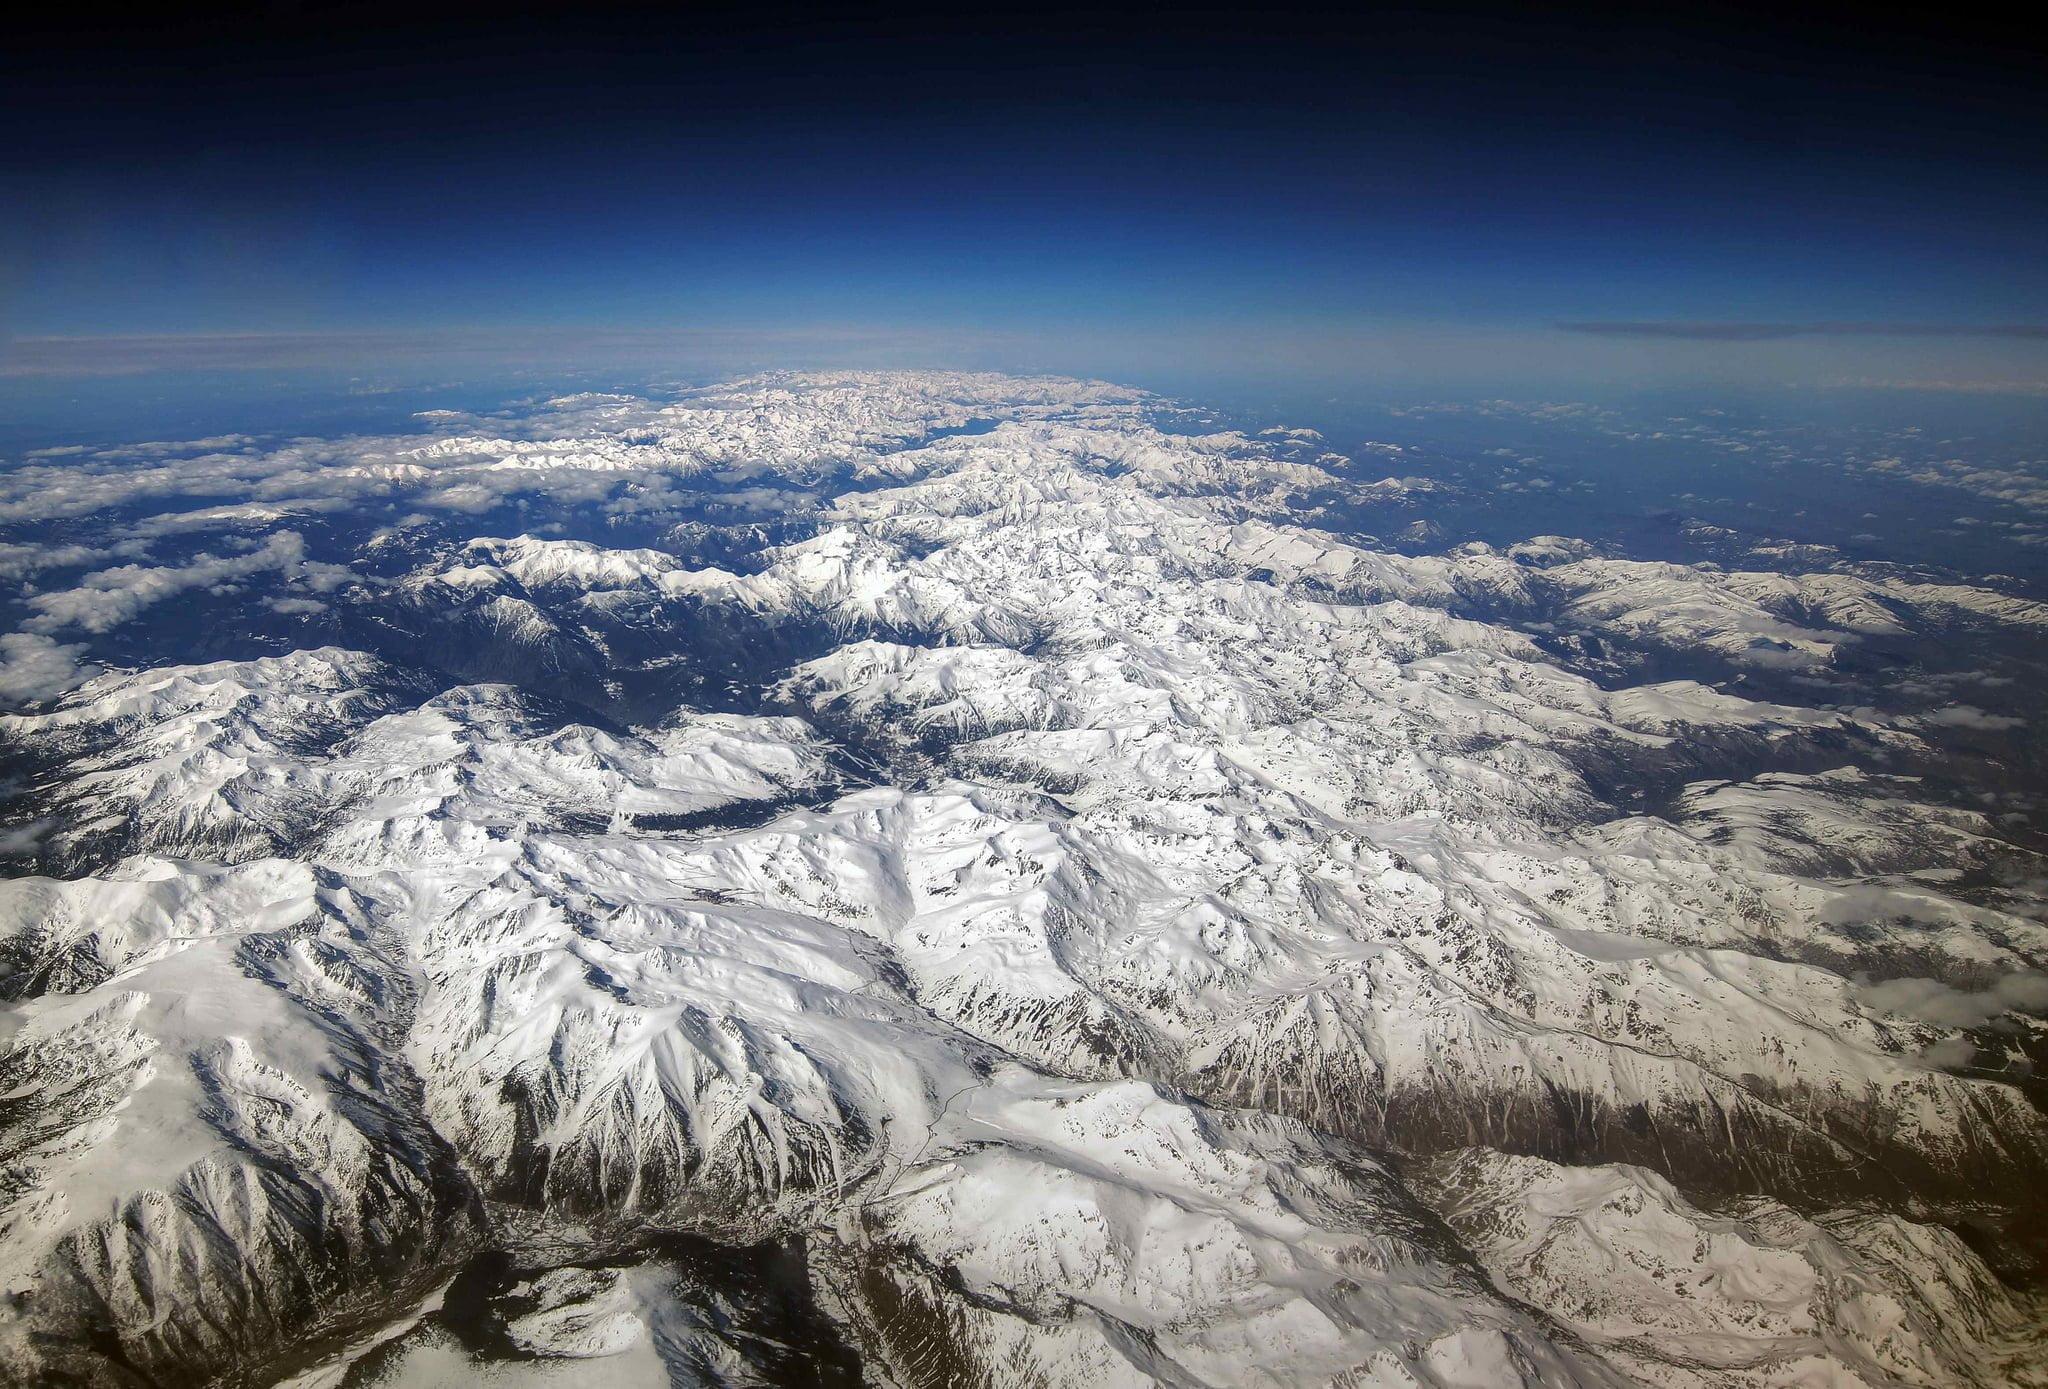 pyrenees mountains from above @mariusz kluzniak